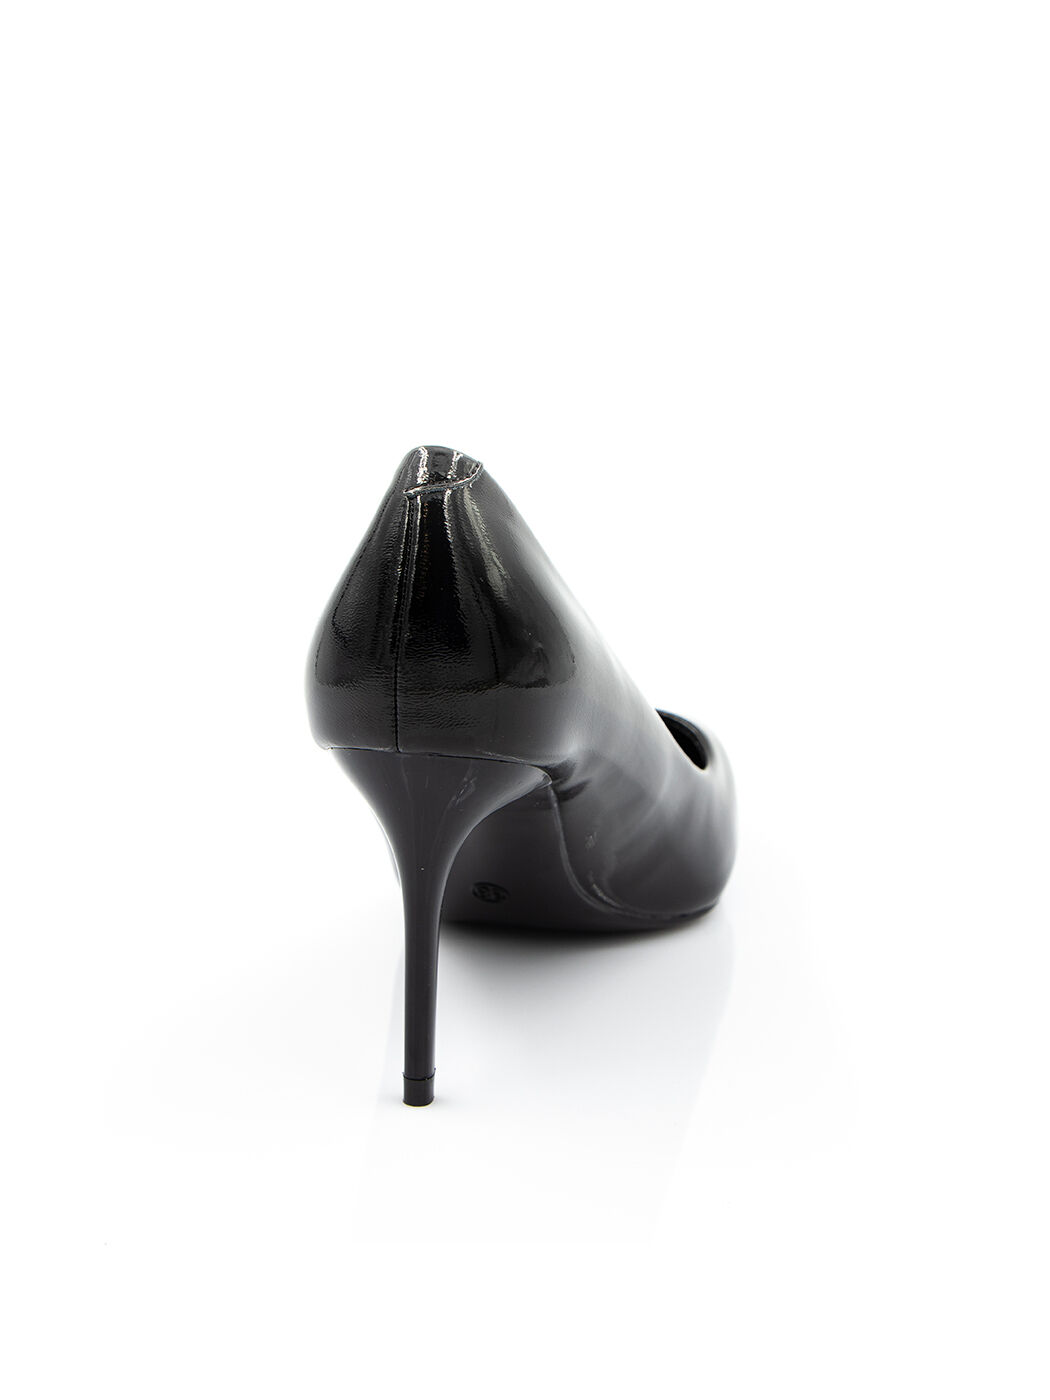 Туфли женские черные искусственный лак каблук шпилька демисезон от производителя DM вид 1